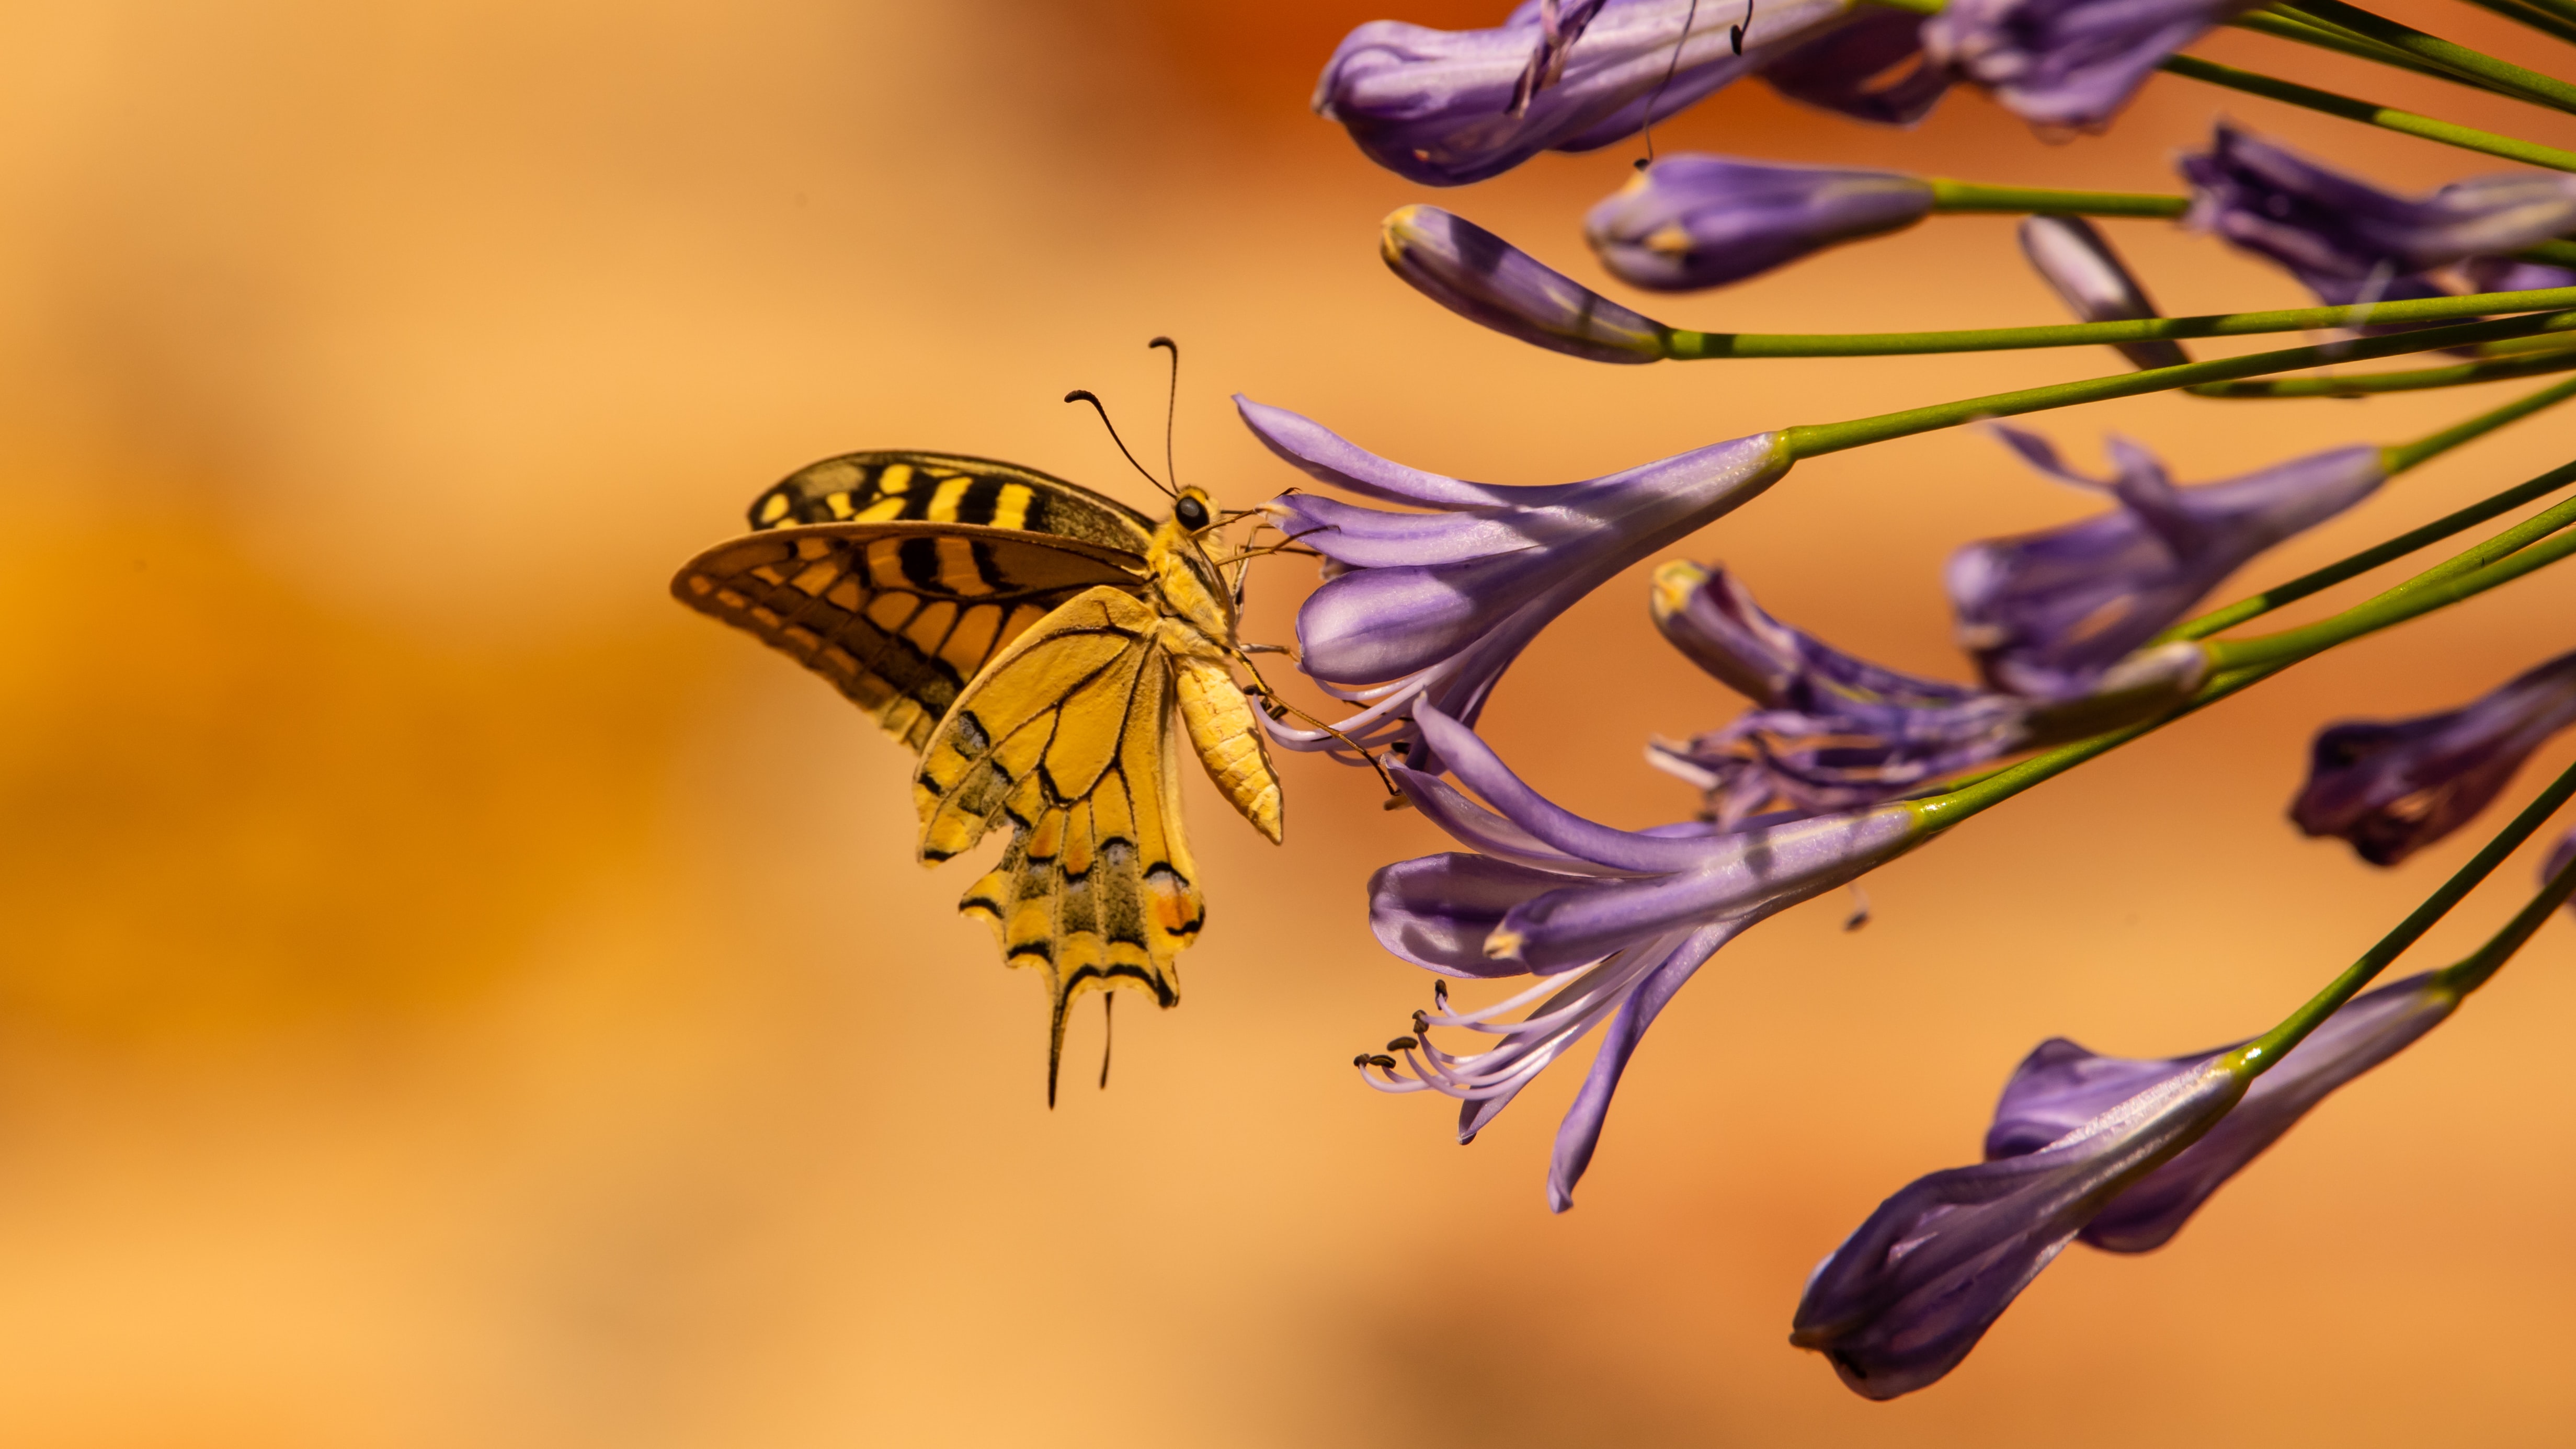 Скачать обои бесплатно Животные, Крылья, Цветы, Бабочка, Тропический картинка на рабочий стол ПК